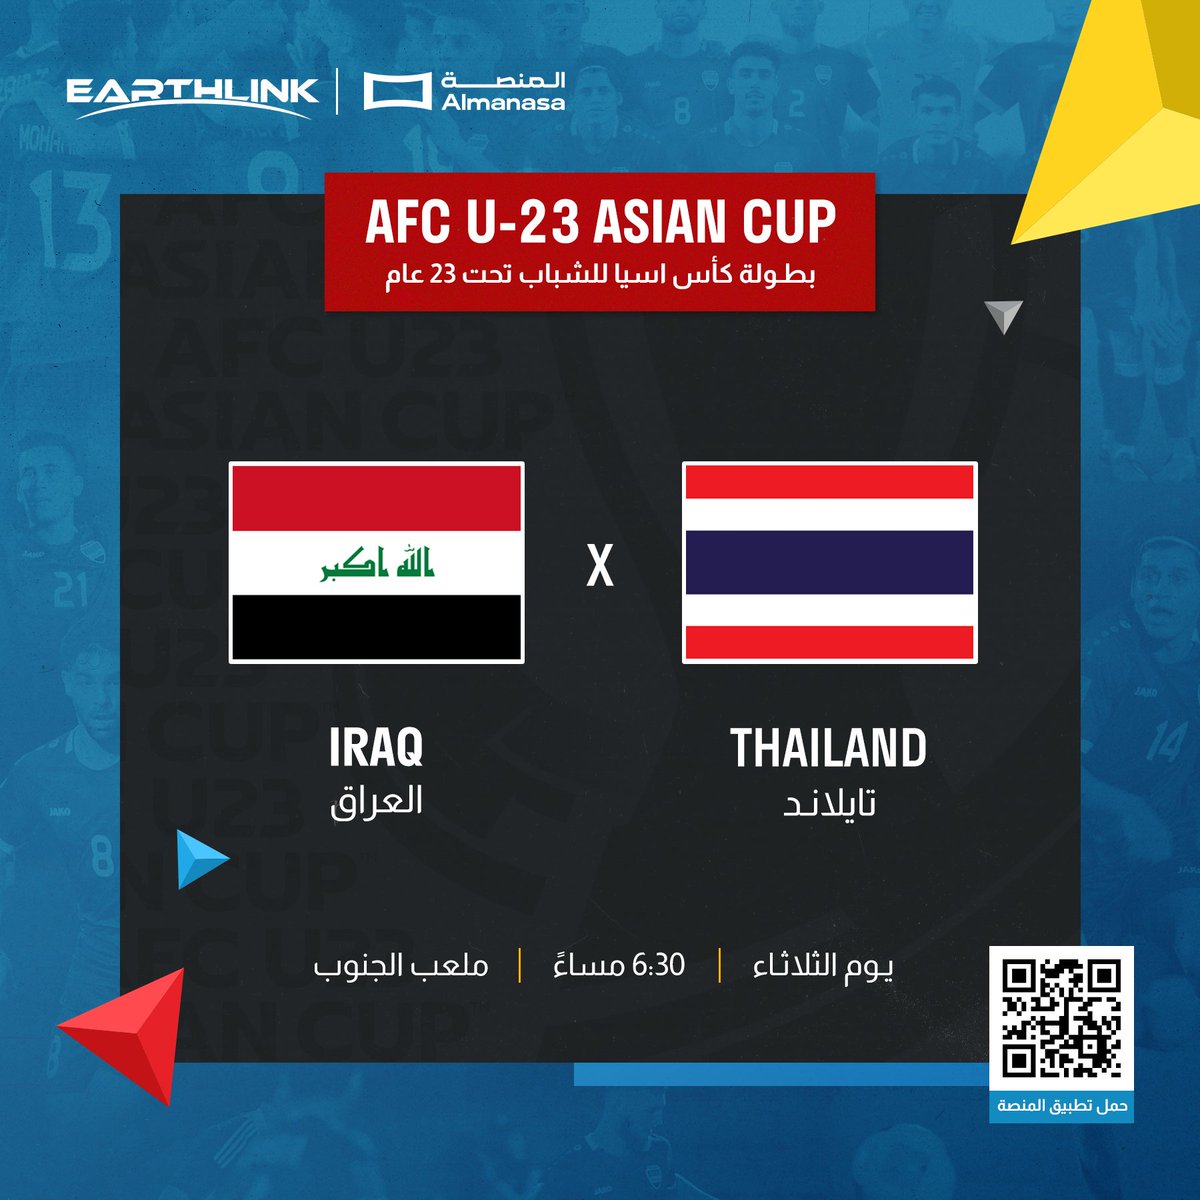 اشترك بايرثلنك وتابع مباراة المنتخب العراقي ضد تايلاند ضمن بطولة كأس آسيا للشباب تحت 23 عام على تطبيق المنصة حمل التطبيق من الرابط التالي: bit.ly/almanasa